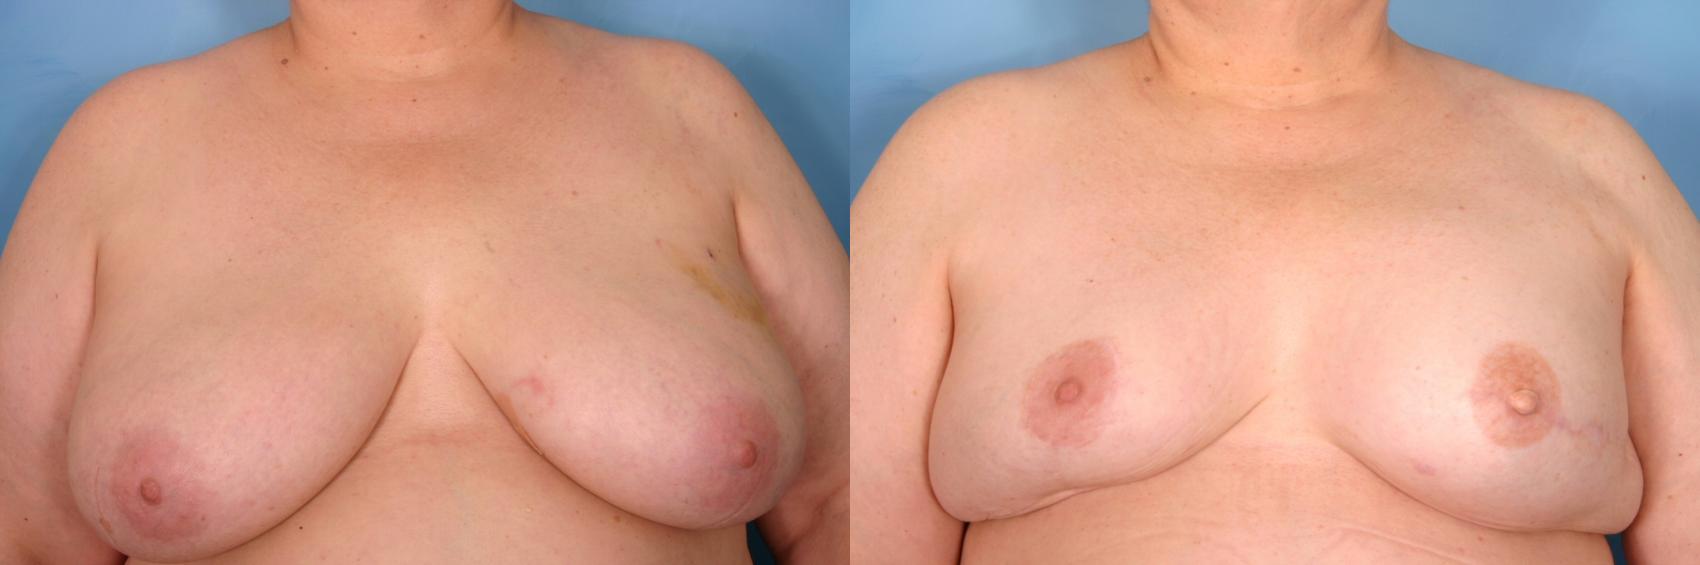 乳房重建前后病例53视图1在那不勒斯和佛罗里达州迈尔斯堡的视图